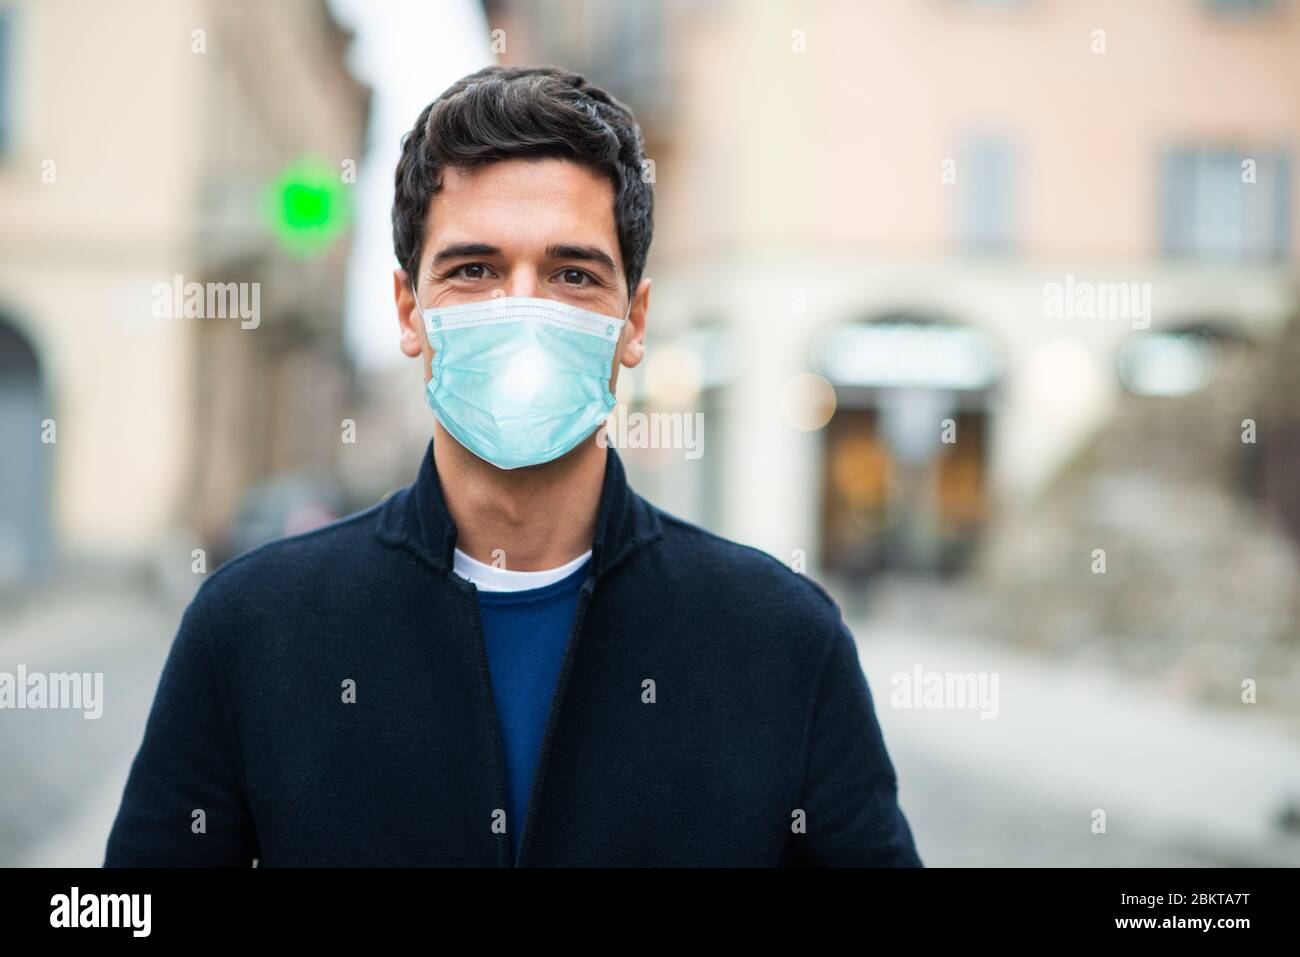 Maskierter Mann, der in einer einsamen Stadt läuft, Coronavirus Pandemie Konzept Stockfoto